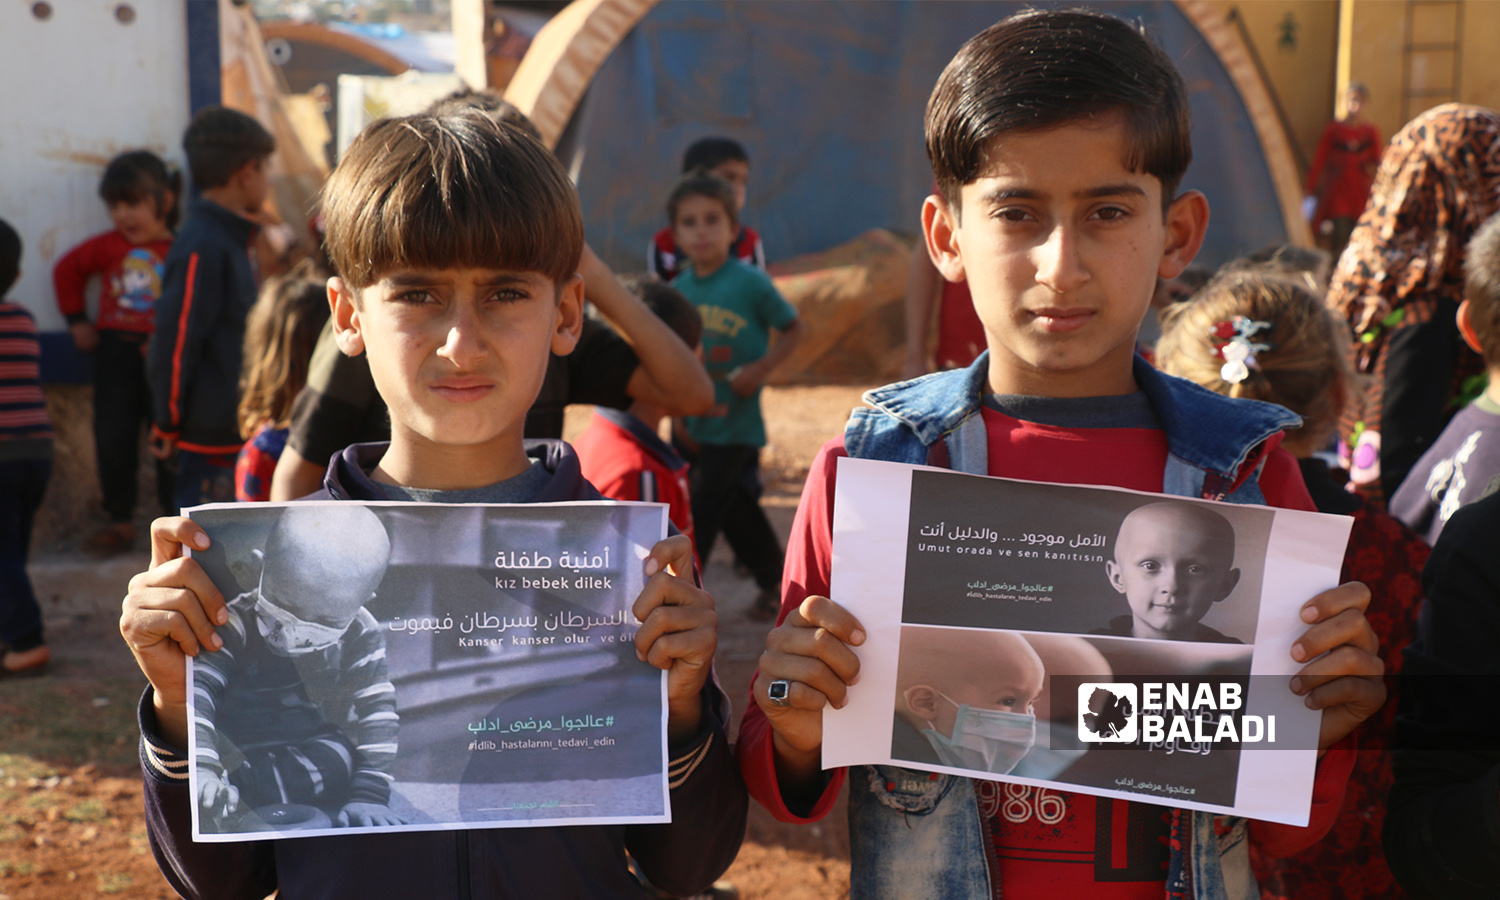 مجموعة أطفال في وقفة احتجاجية تحت شعار"عالجوا مرضى إدلب" للمطالبة بعلاج المرضى في الشمال السوري - 2 تشرين الثاني 2021 (عنب بلدي / إياد عبد الجواد)
